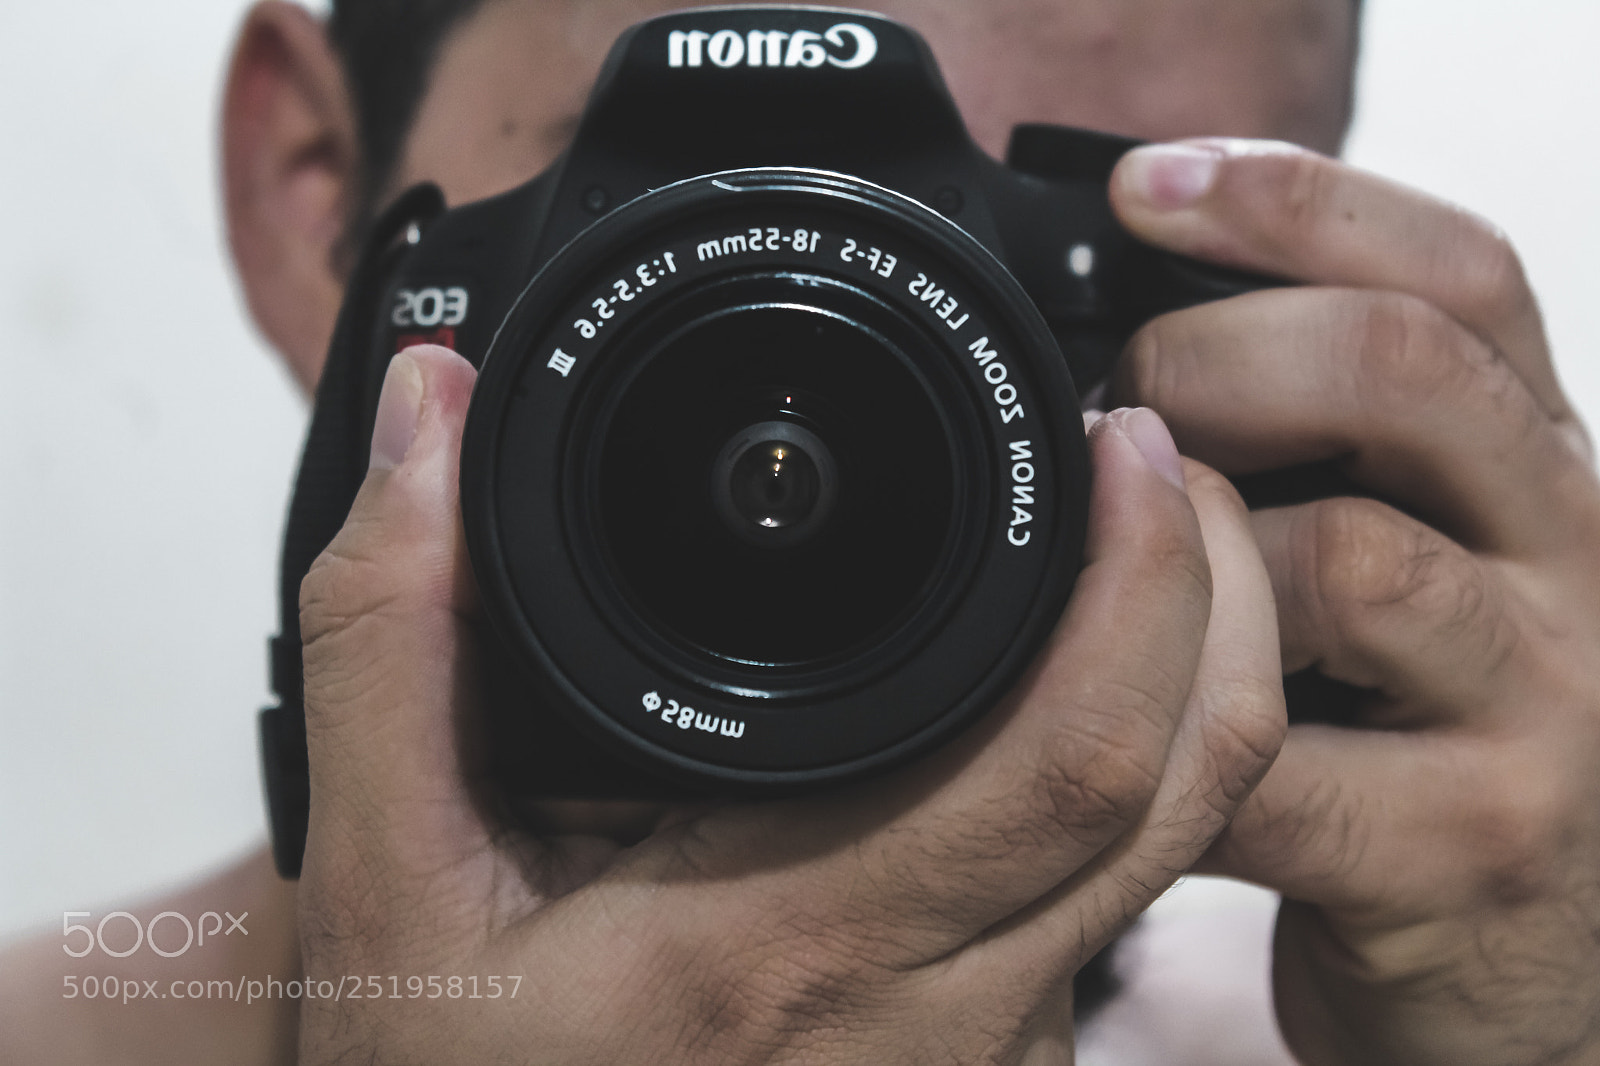 Canon EOS 1200D (EOS Rebel T5 / EOS Kiss X70 / EOS Hi) sample photo. Auto retrato photography